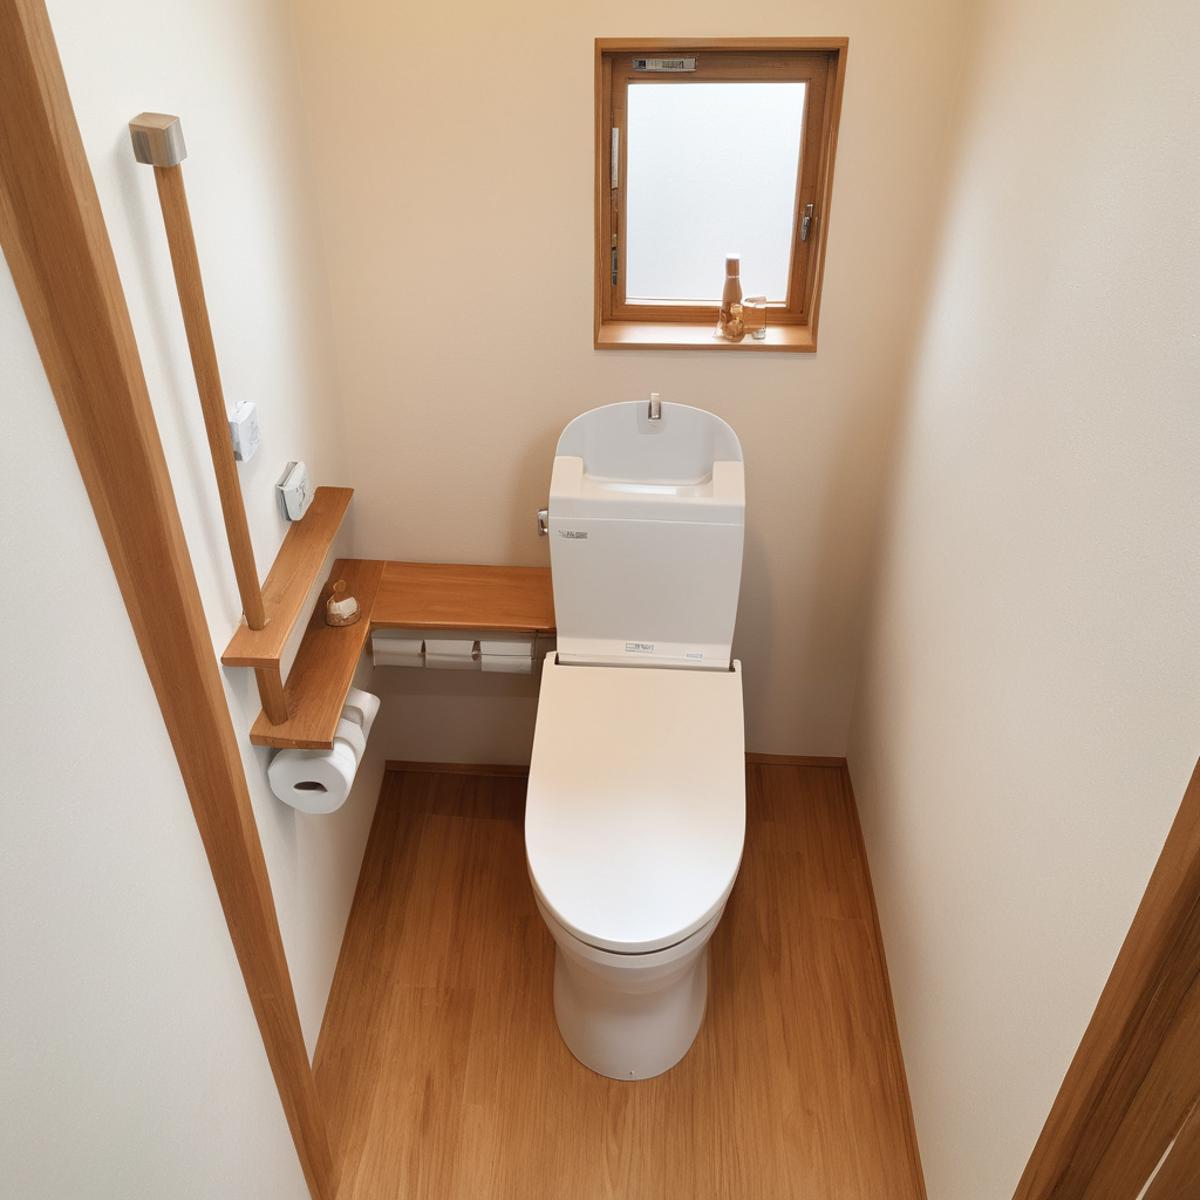 日本の住宅のトイレ Toilets in Japanese Houses SDXL image by swingwings